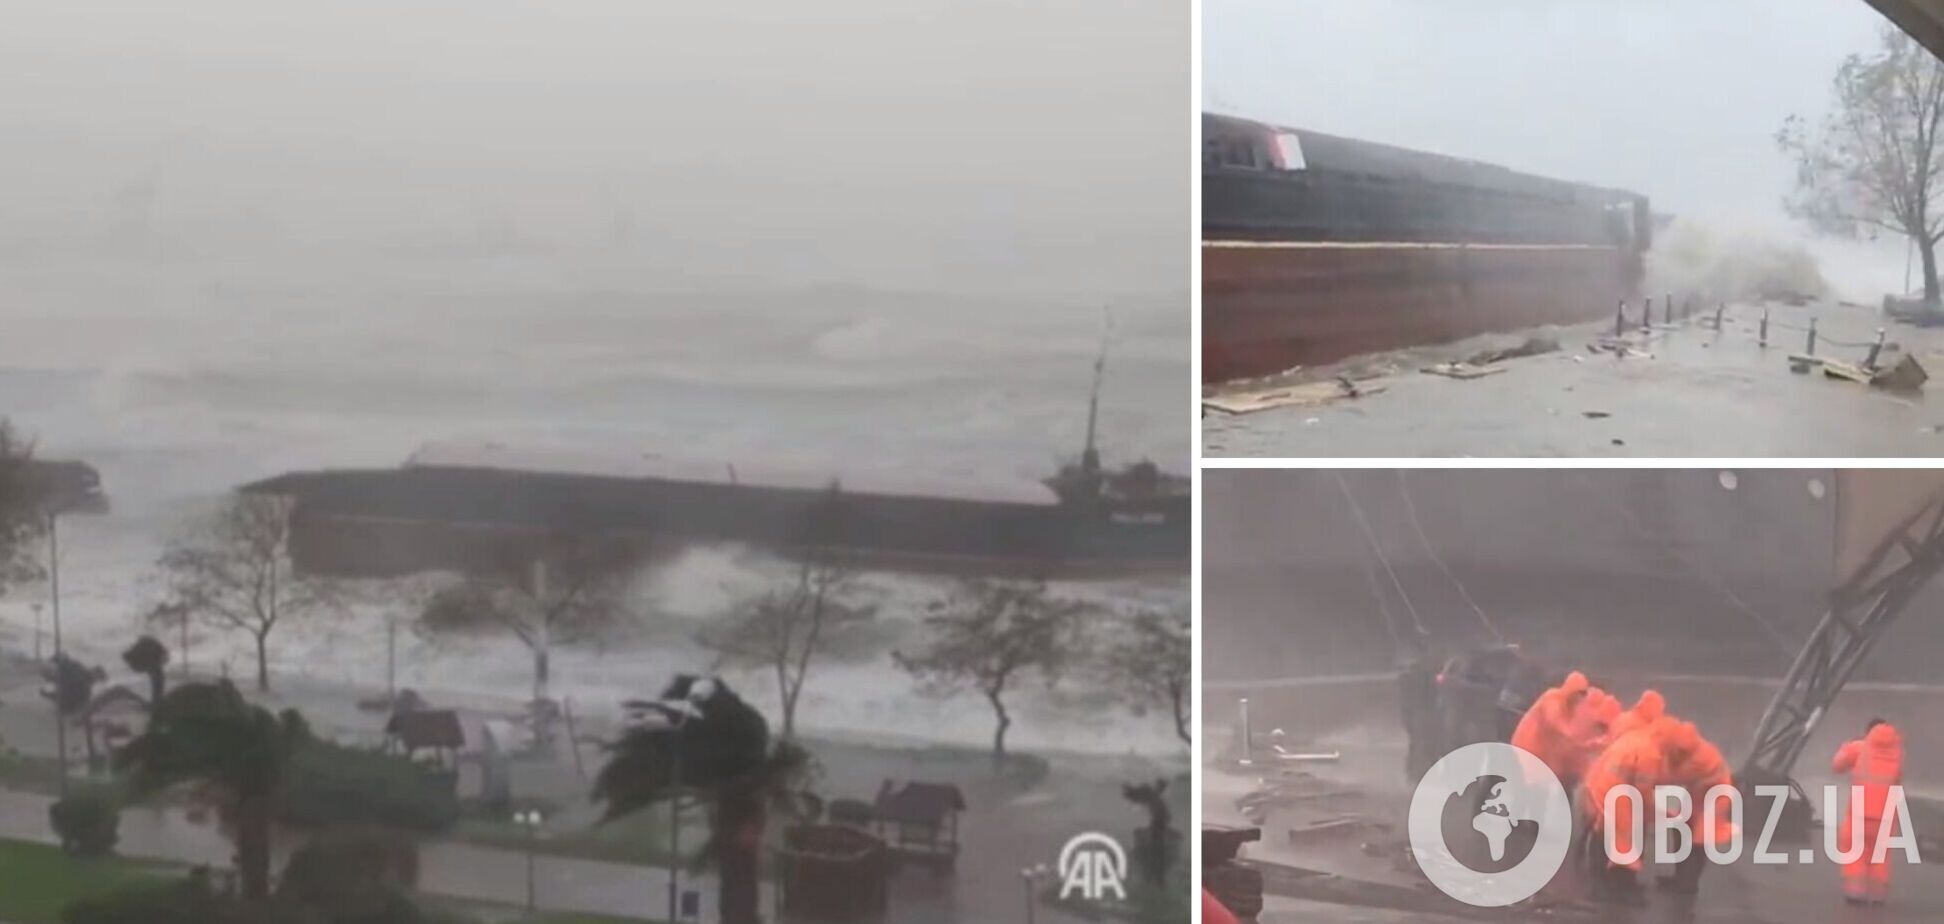 Суховантаж, який прямував із Одеси, потрапив у шторм і розколовся надвоє біля берегів Туреччини. Відео